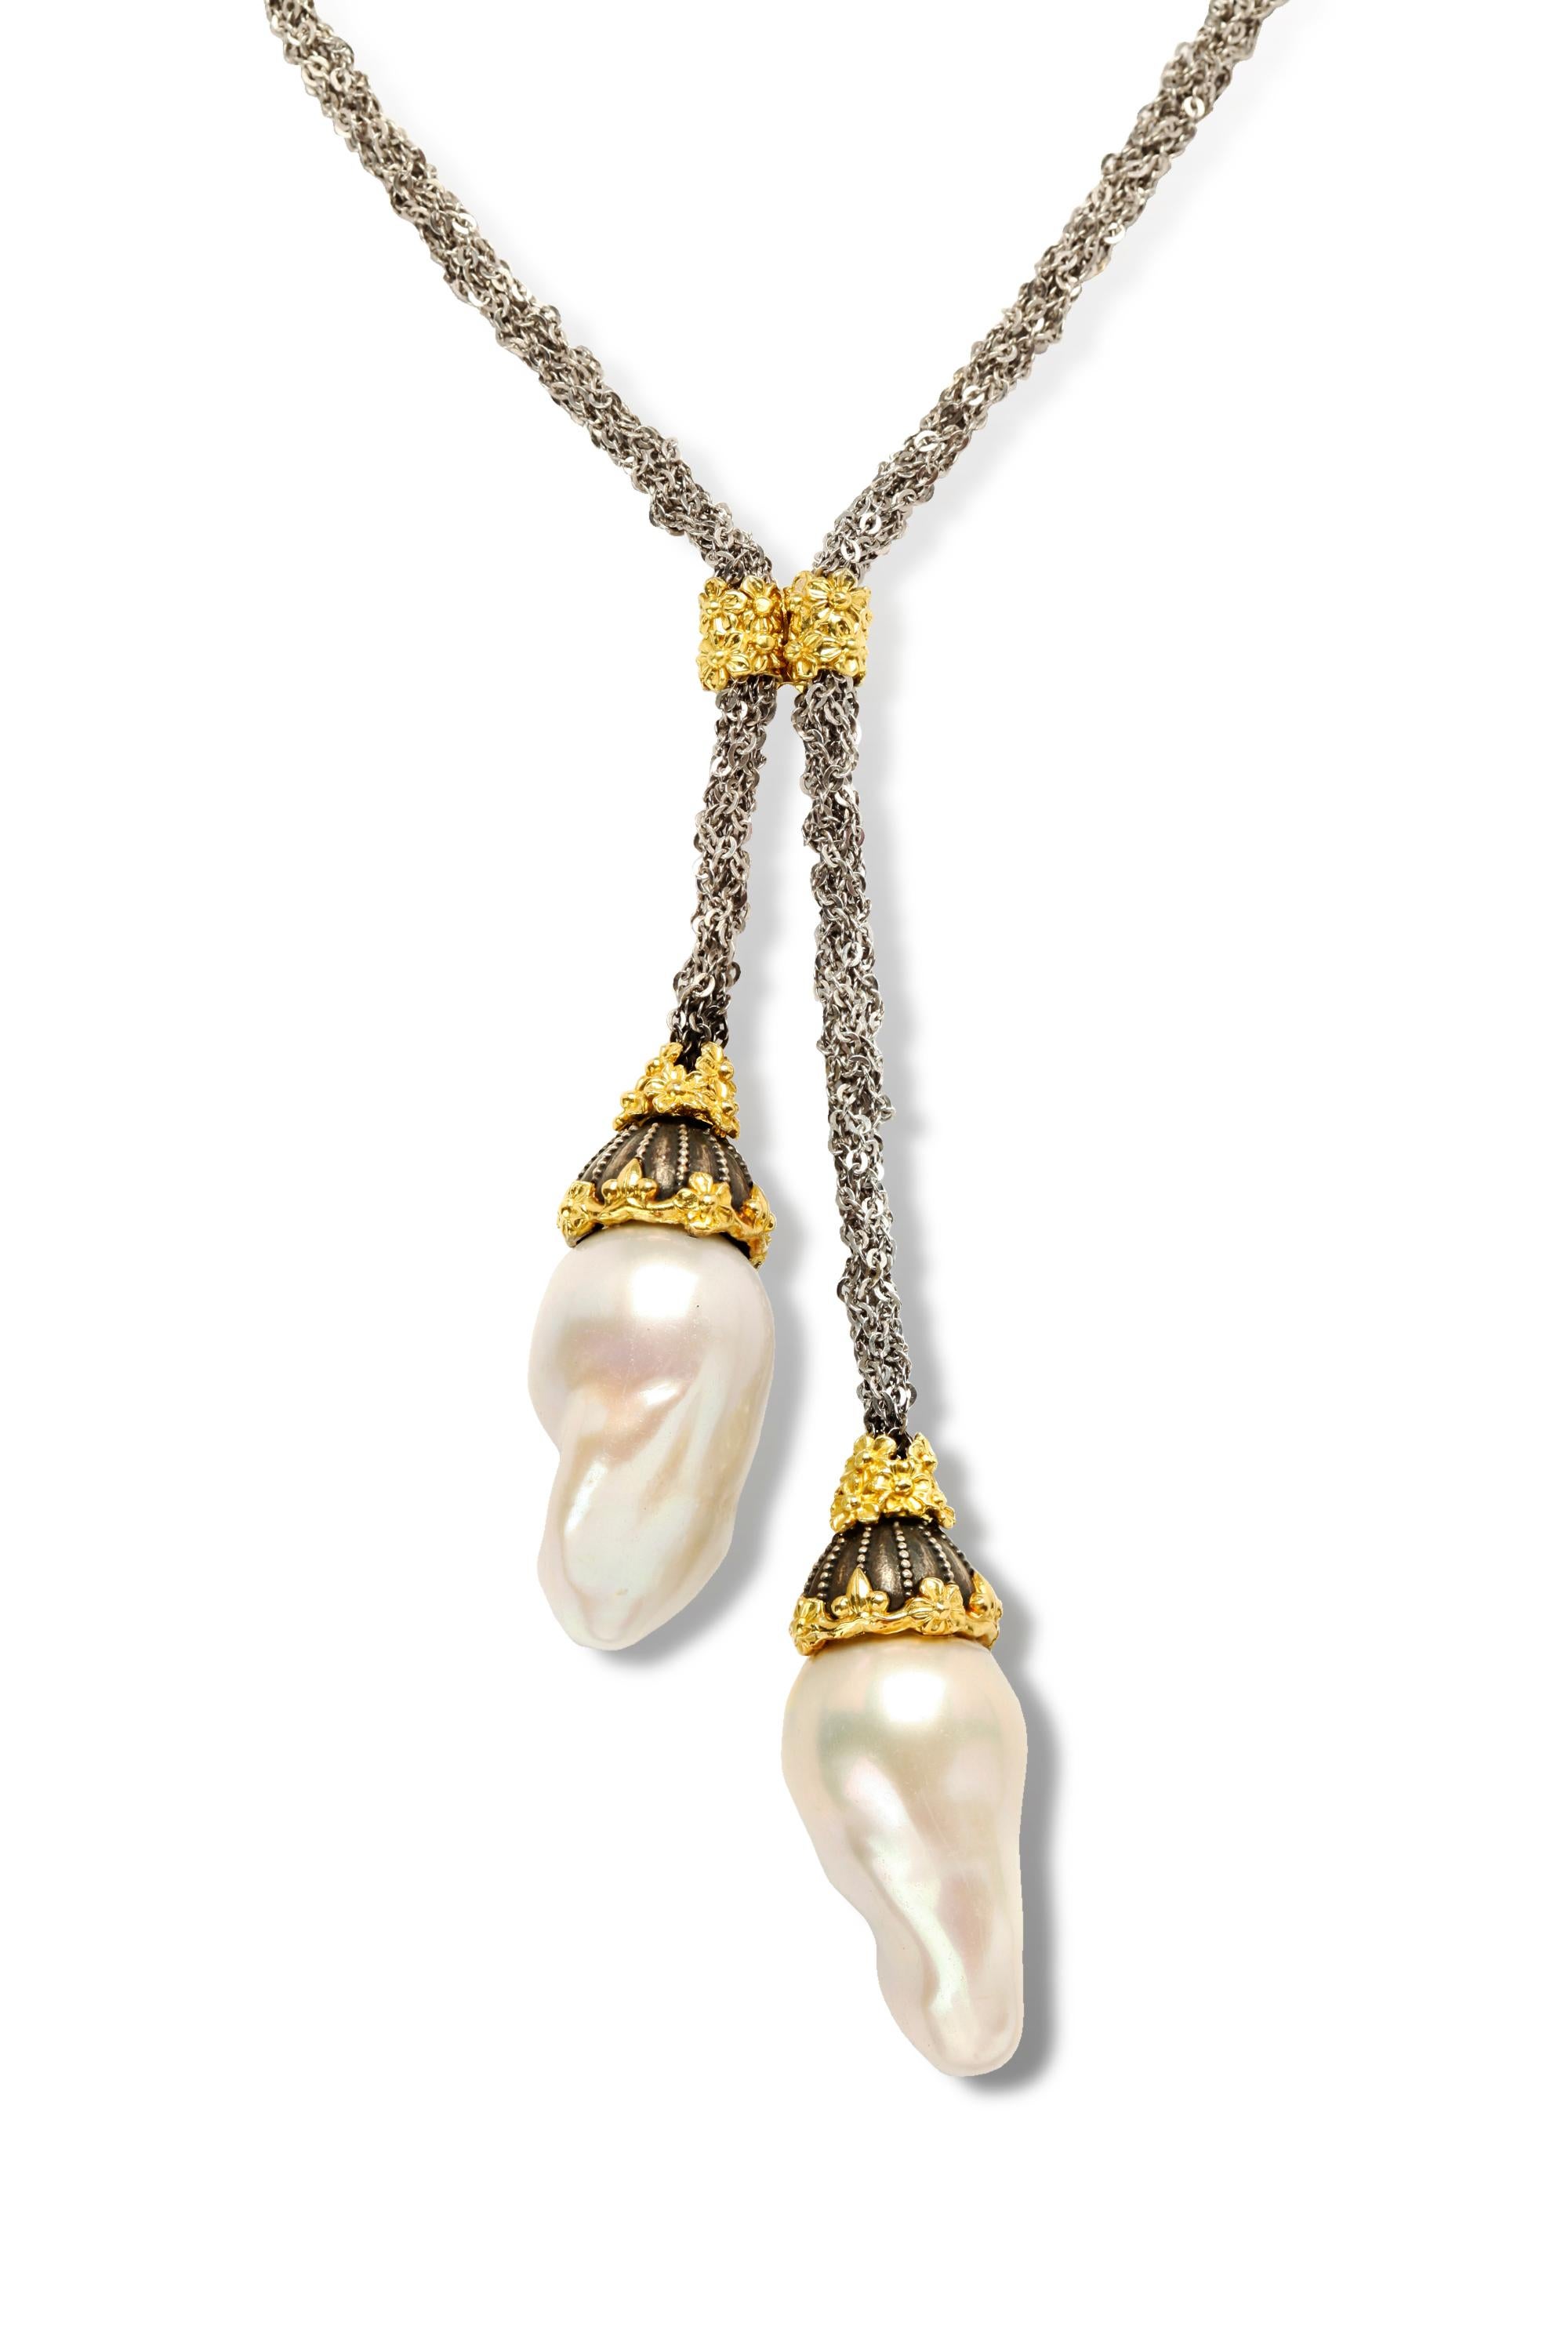 Stambolian Mesh Silberkette und 18K Gold Barockperlentropfen Lariat Halskette 

Diese einzigartige Halskette besteht aus einer wunderschönen Netzkette, die in der Mitte durch ein goldenes Blumendesign verbunden ist.

Das Design führt zu zwei Tropfen